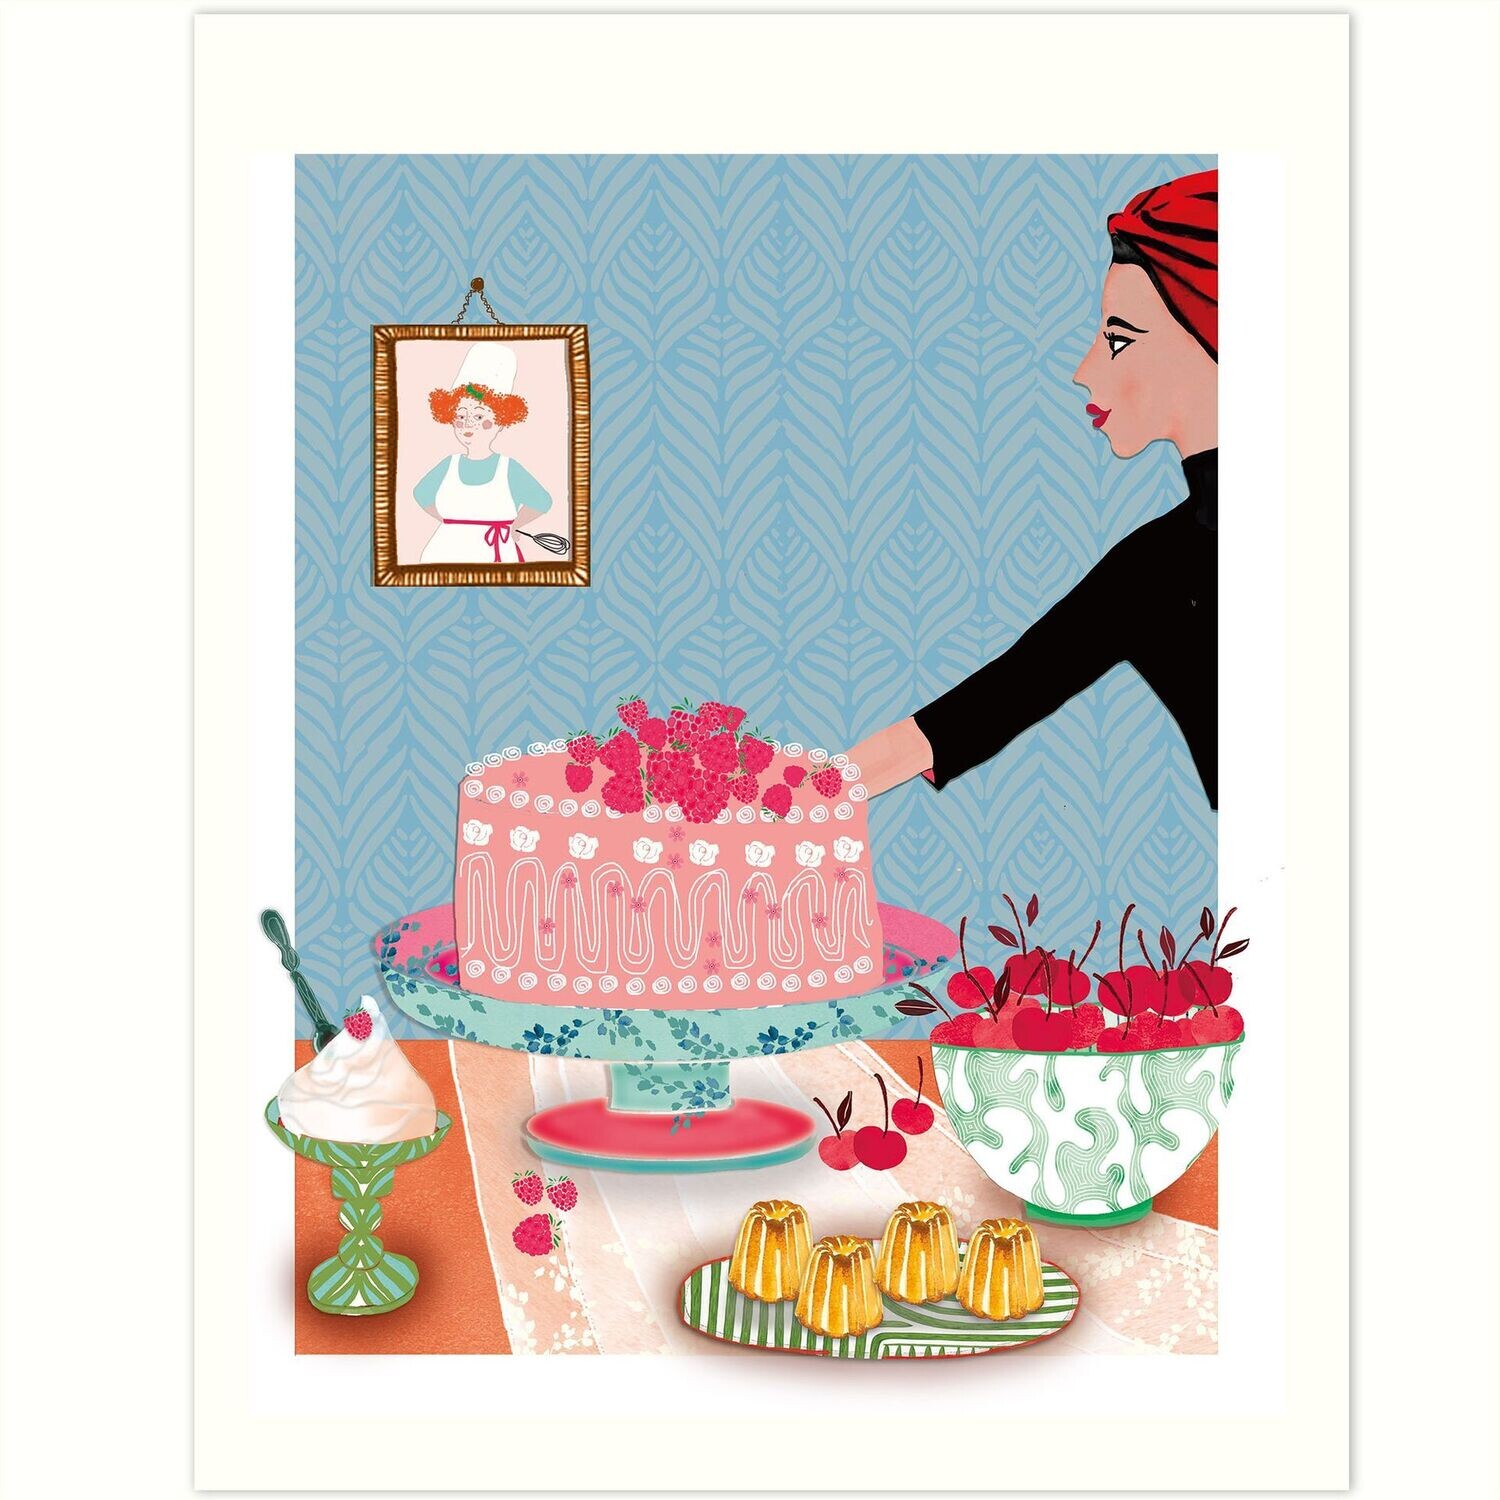 Print - Kitchen Art - Tortenschlacht und Patisserie - Kleines Poster 21 x 25 cm